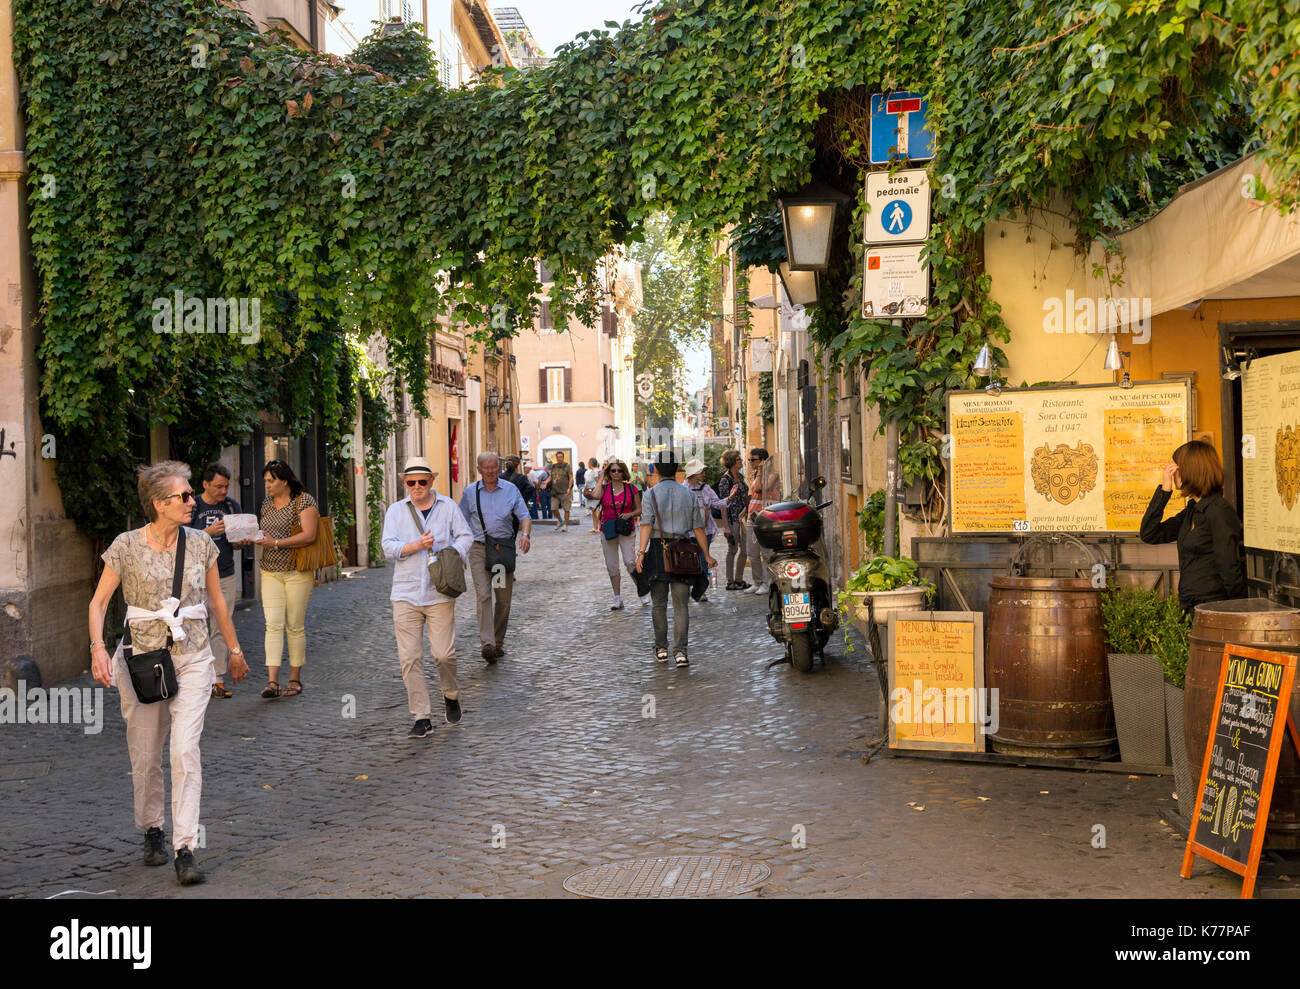 Vine draped street scene in the Trastevere district  of Rome, Italy. Stock Photo